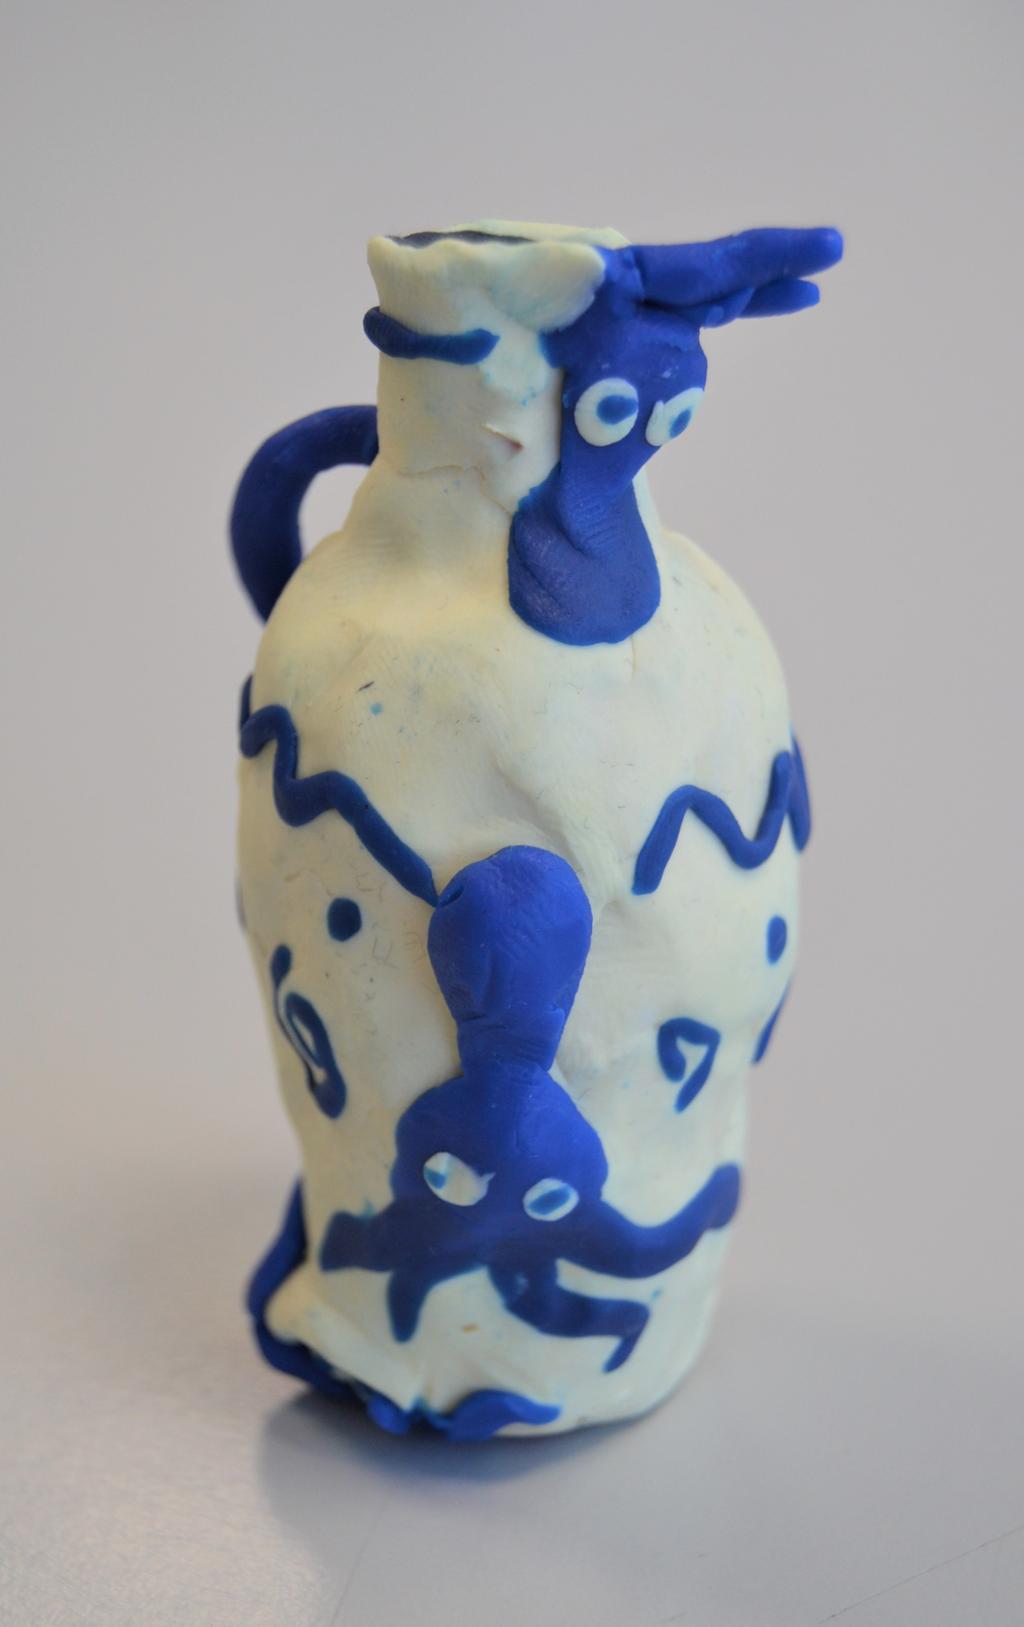 Kvit vase med blå blekksprutar i plastelina. Foto.